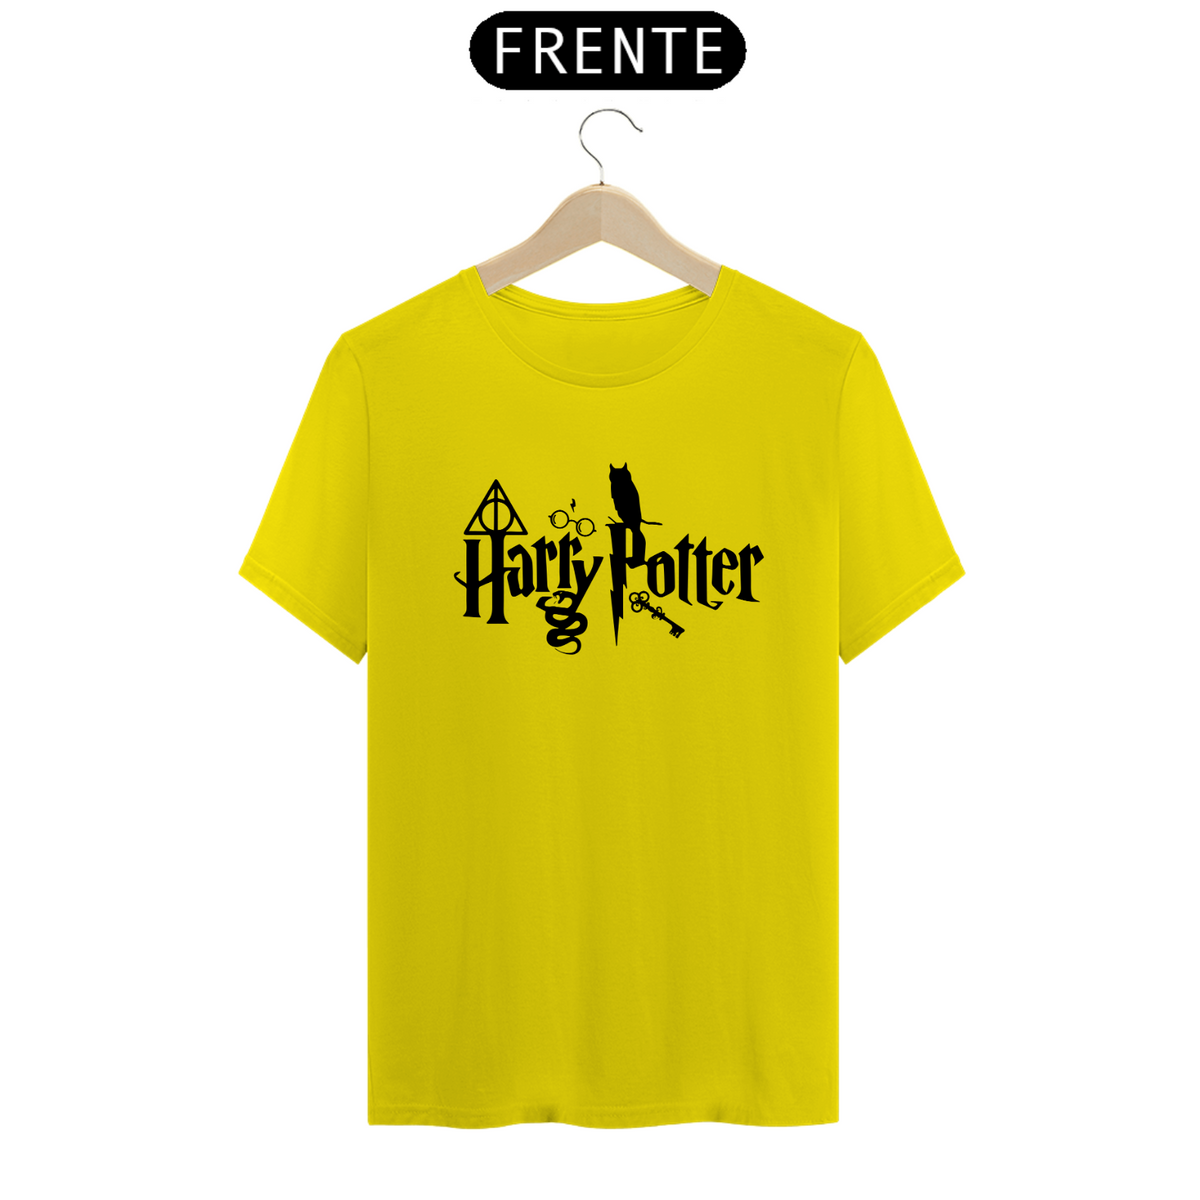 Nome do produto: Harry Potter A001